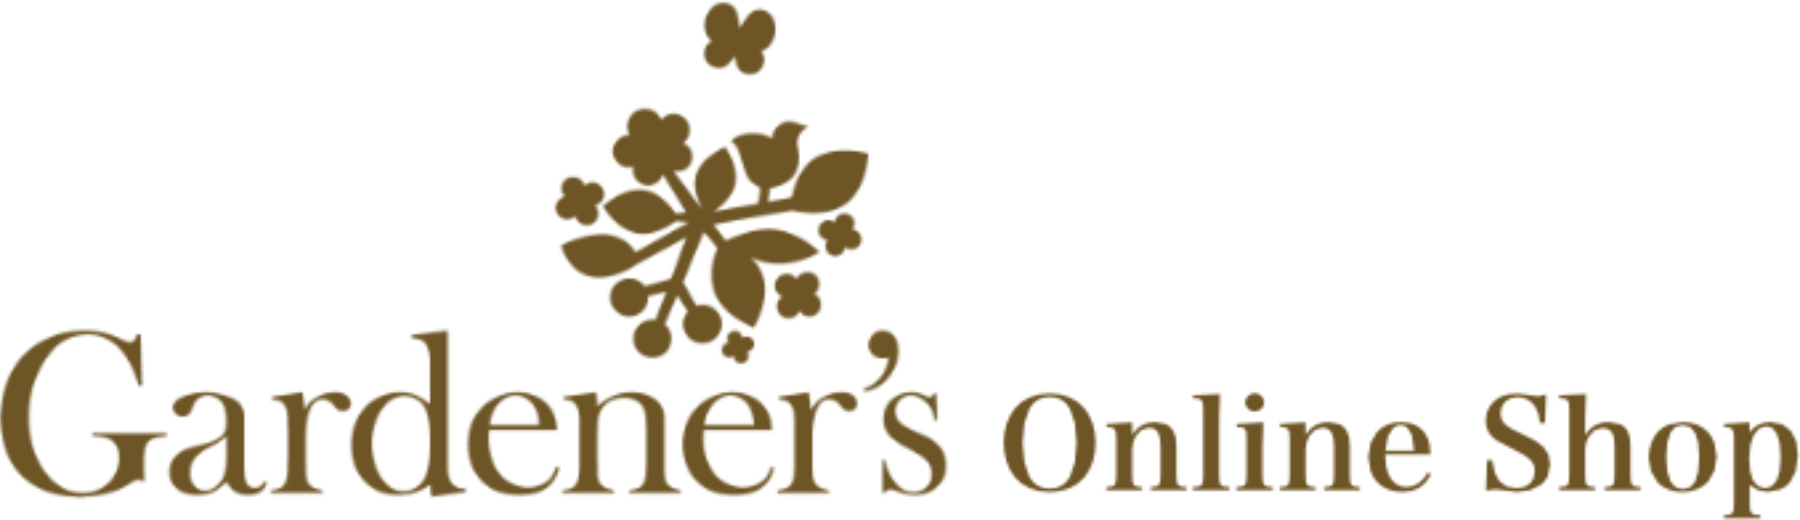 Gardener’s Online Shop